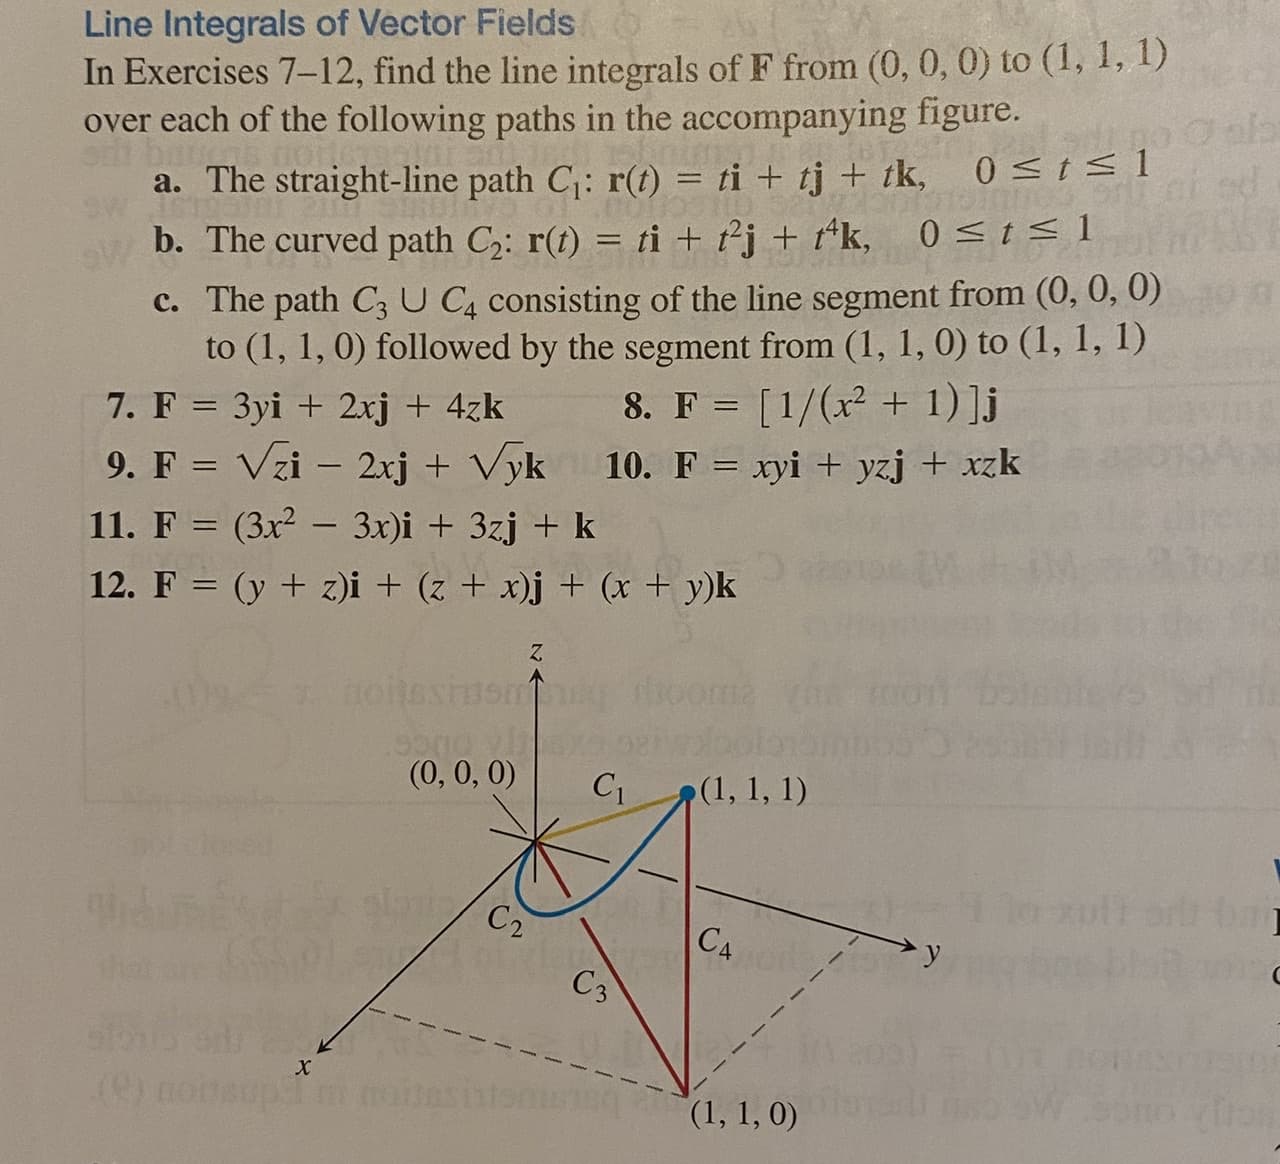 11. F = (3x2 - 3x)i + 3zj + k
